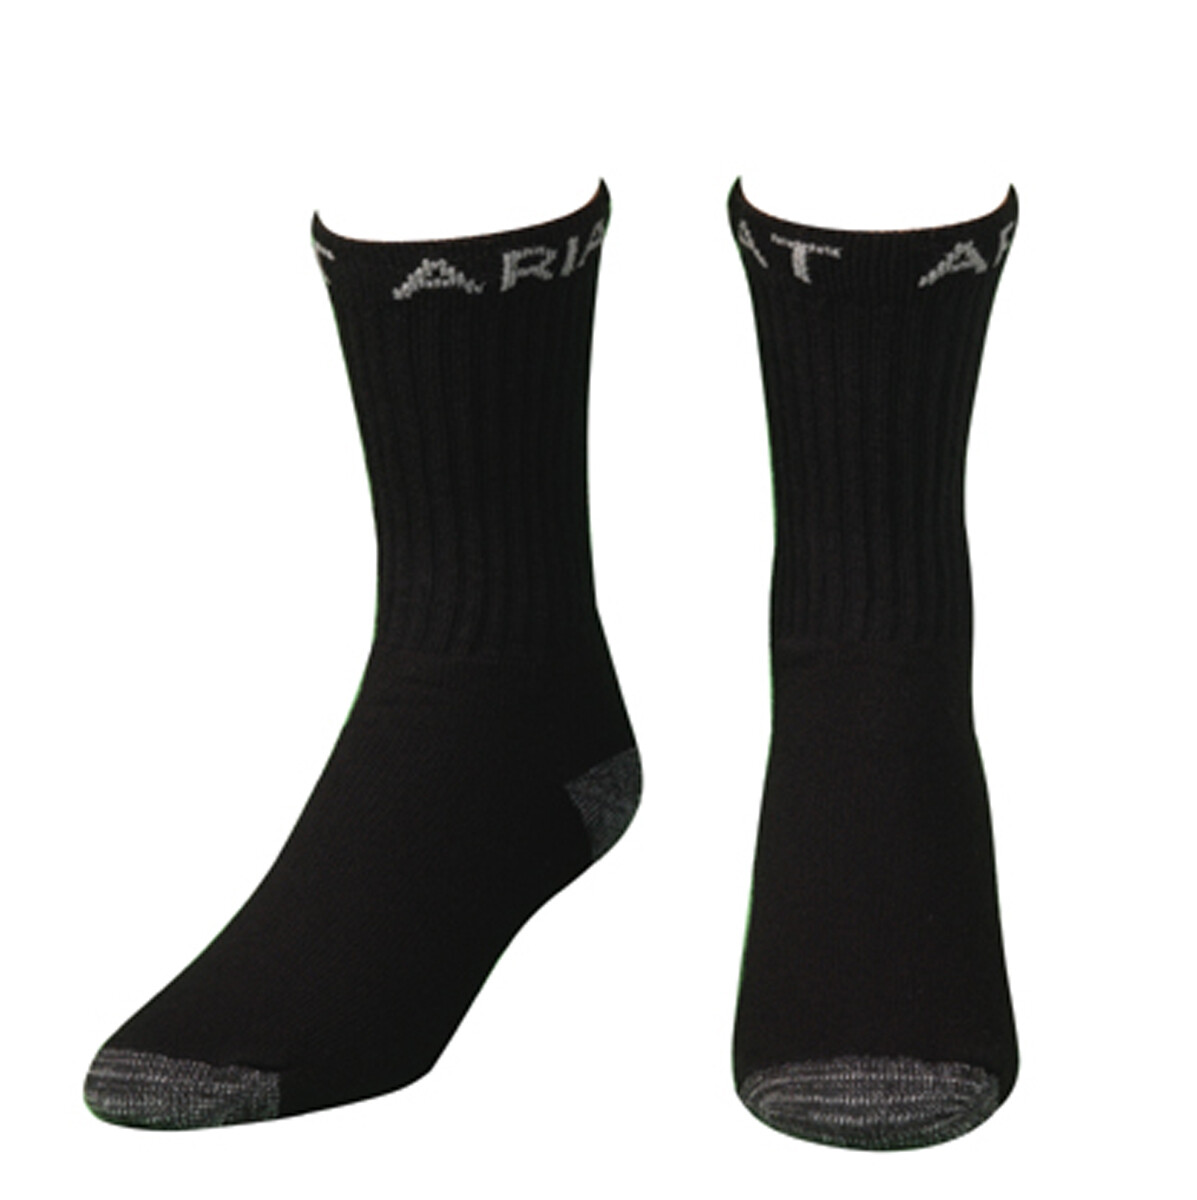 A2503801 Ariat Super Crew Boot Socks